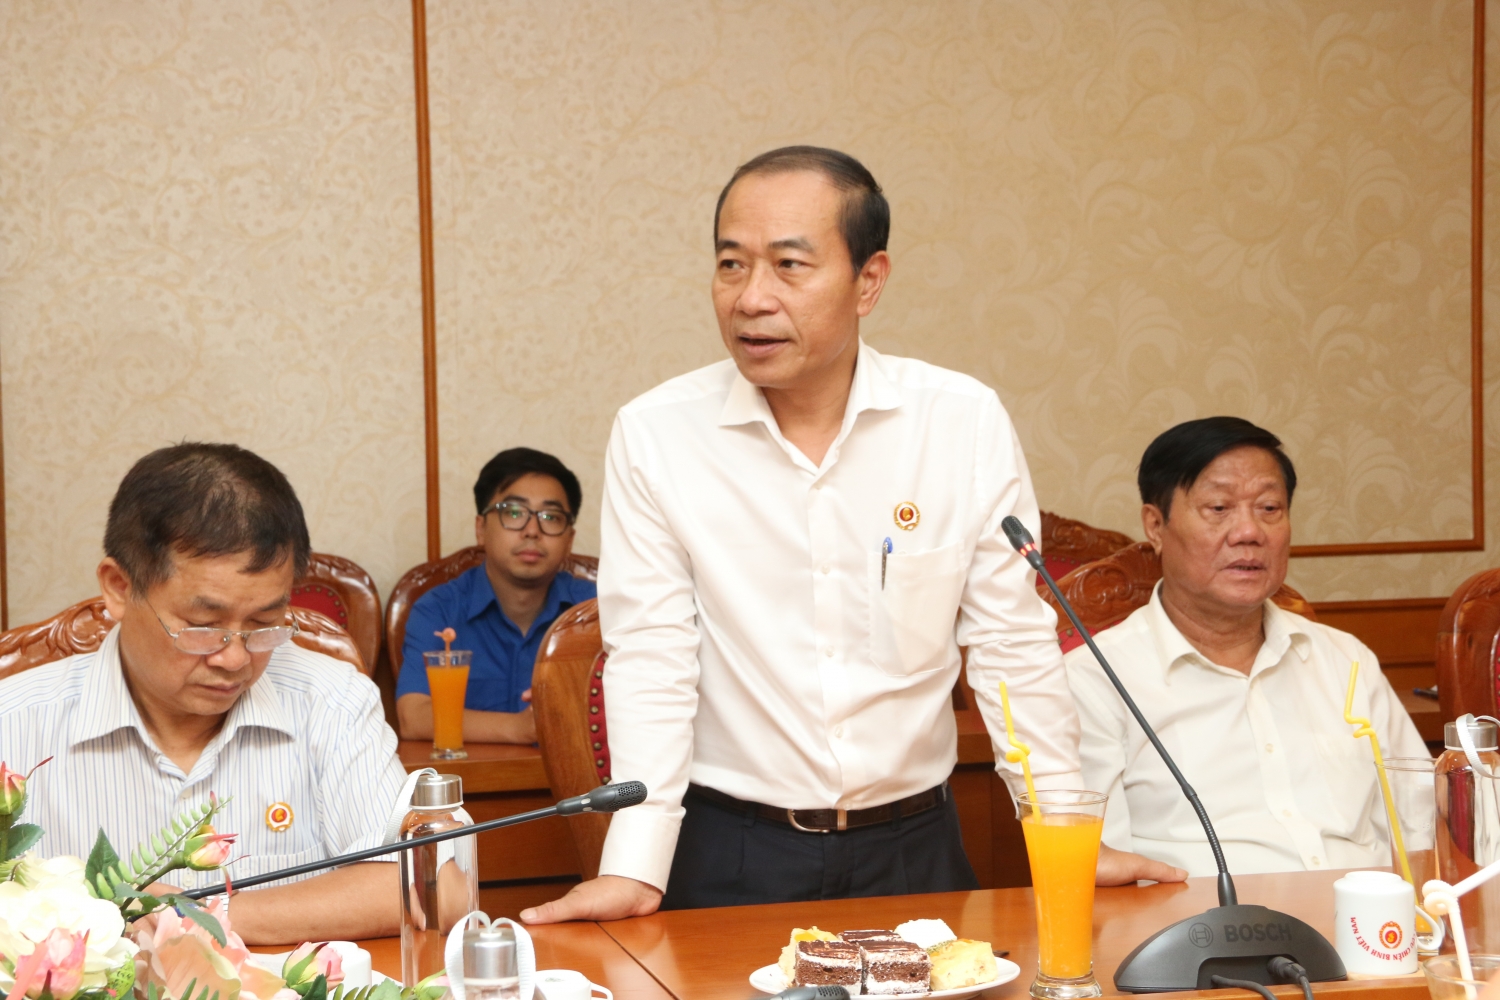 Đồng chí Phạm Quang Dũng - Chủ tịch Hội CCB Tập đoàn phát biểu tại buổi gặp mặt các CCB